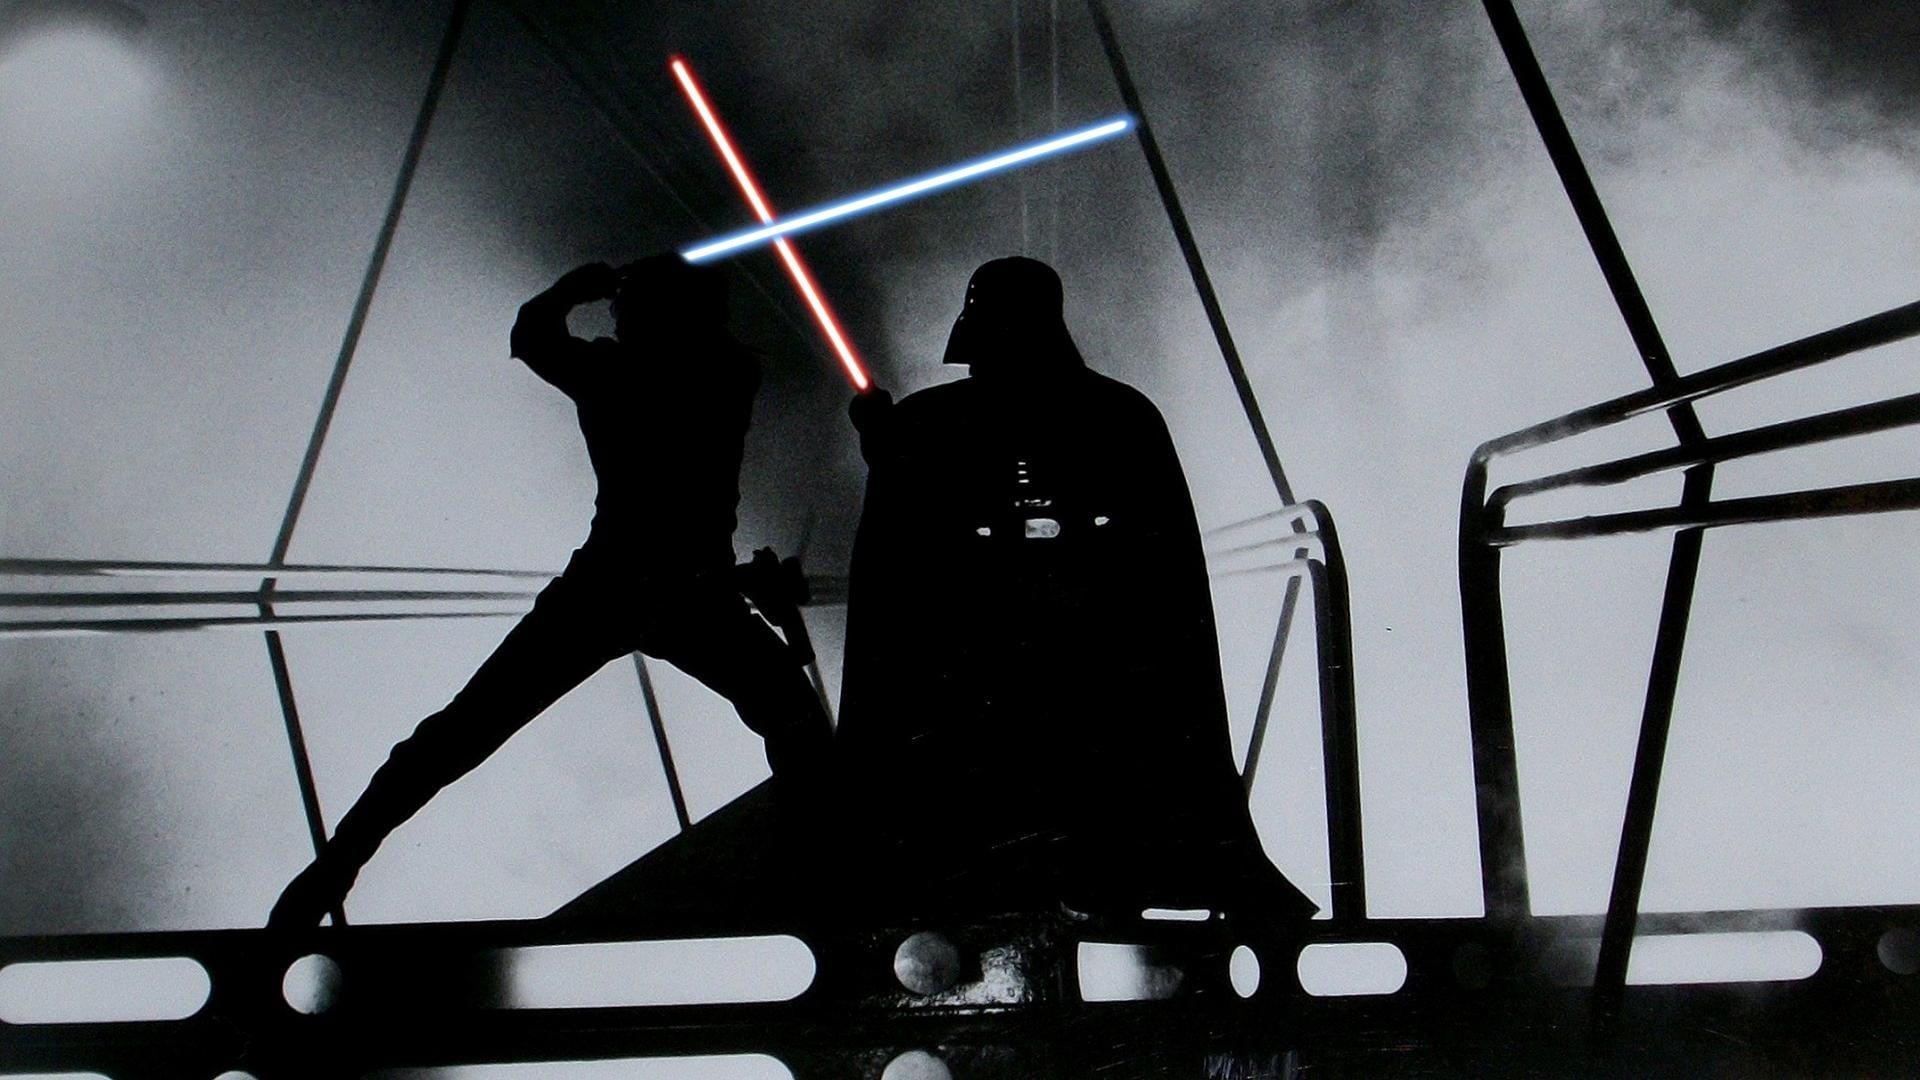 Silhouette of Star Wars Darth Vader illustration, Star Wars